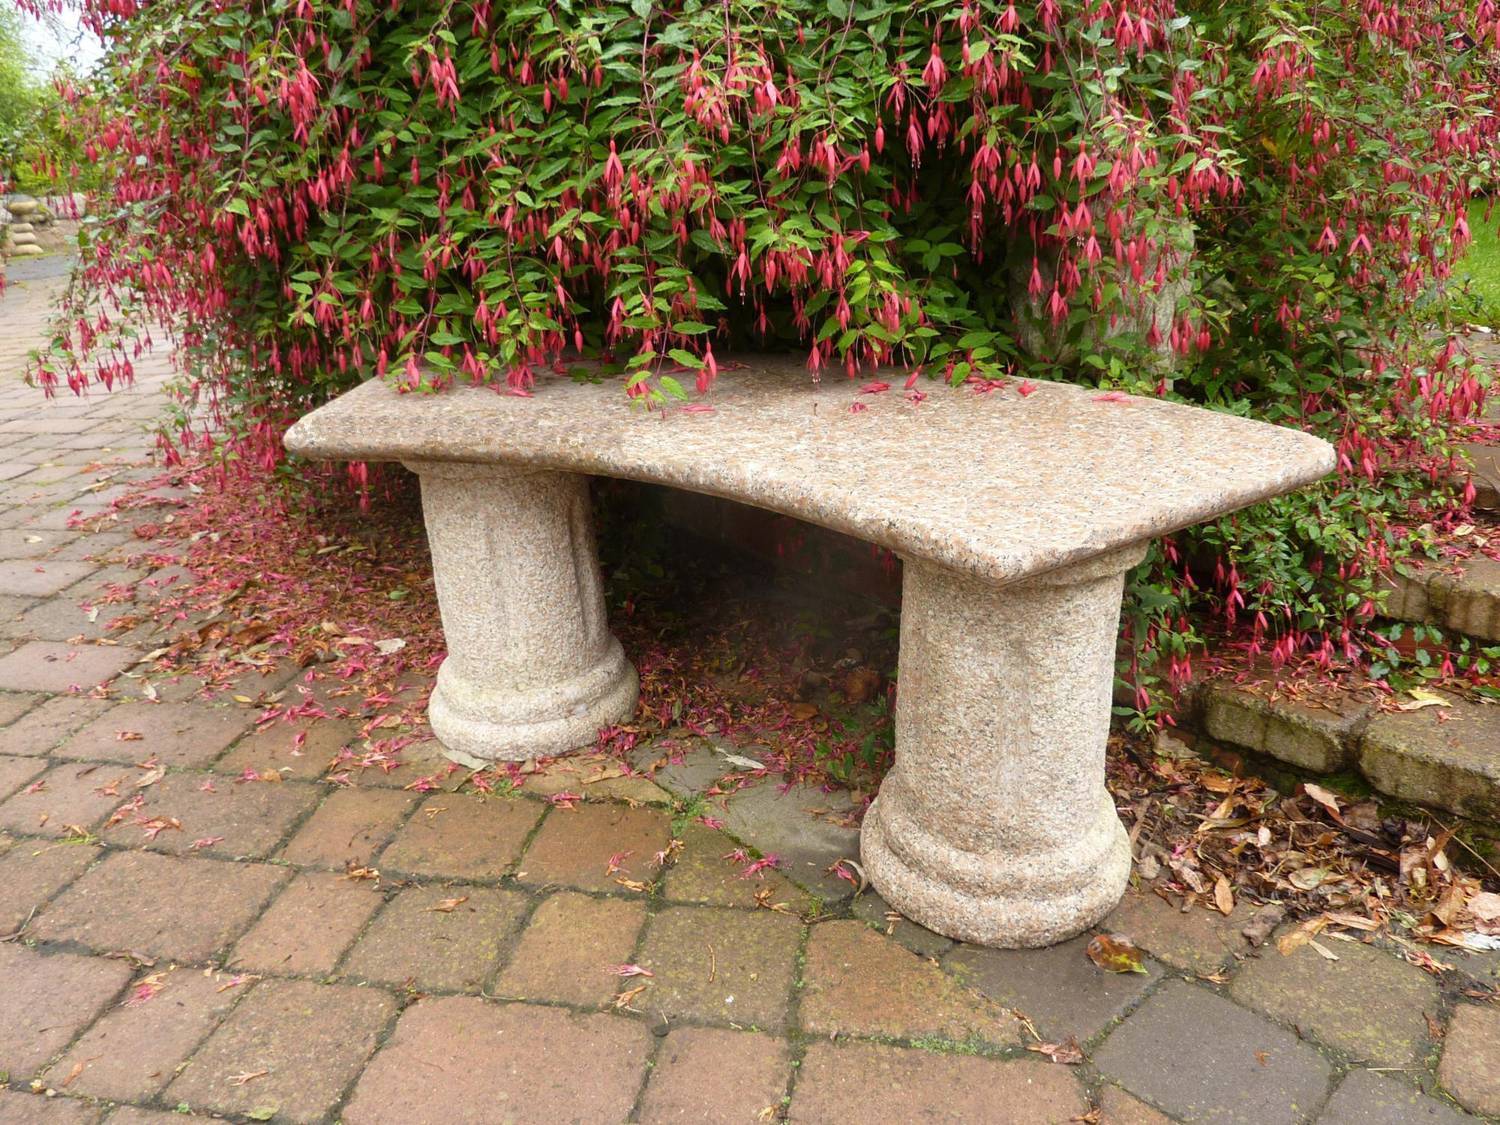 Florence Pink Granite Garden Bench